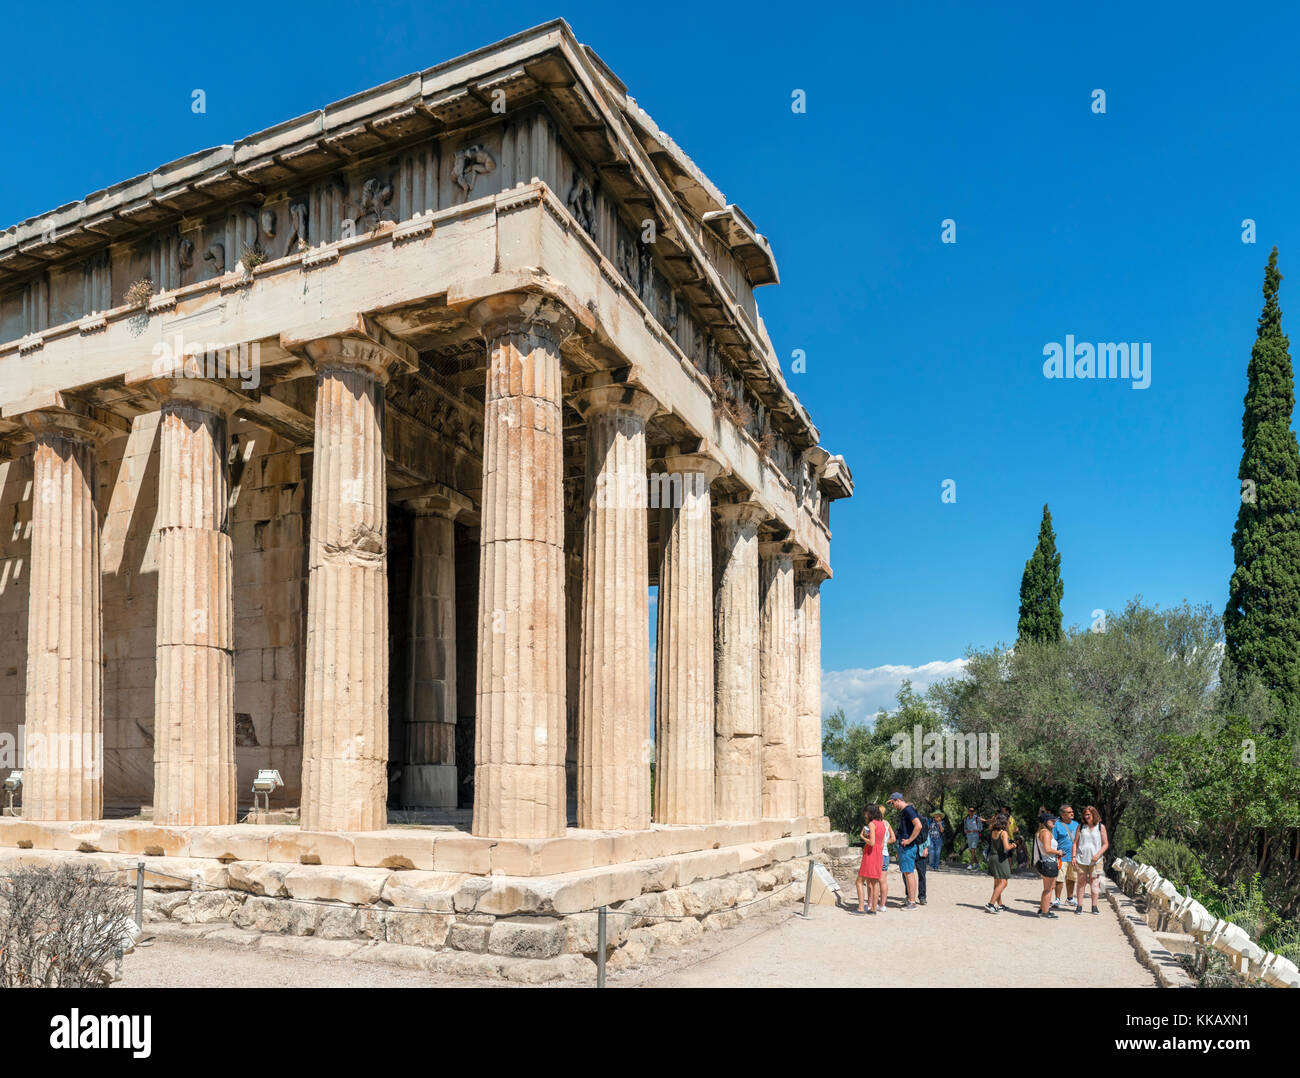 Les touristes devant le Temple d'Héphaïstos (Héphaïstos) dans l'enceinte de l'ancienne Agora, Athènes, Grèce Banque D'Images